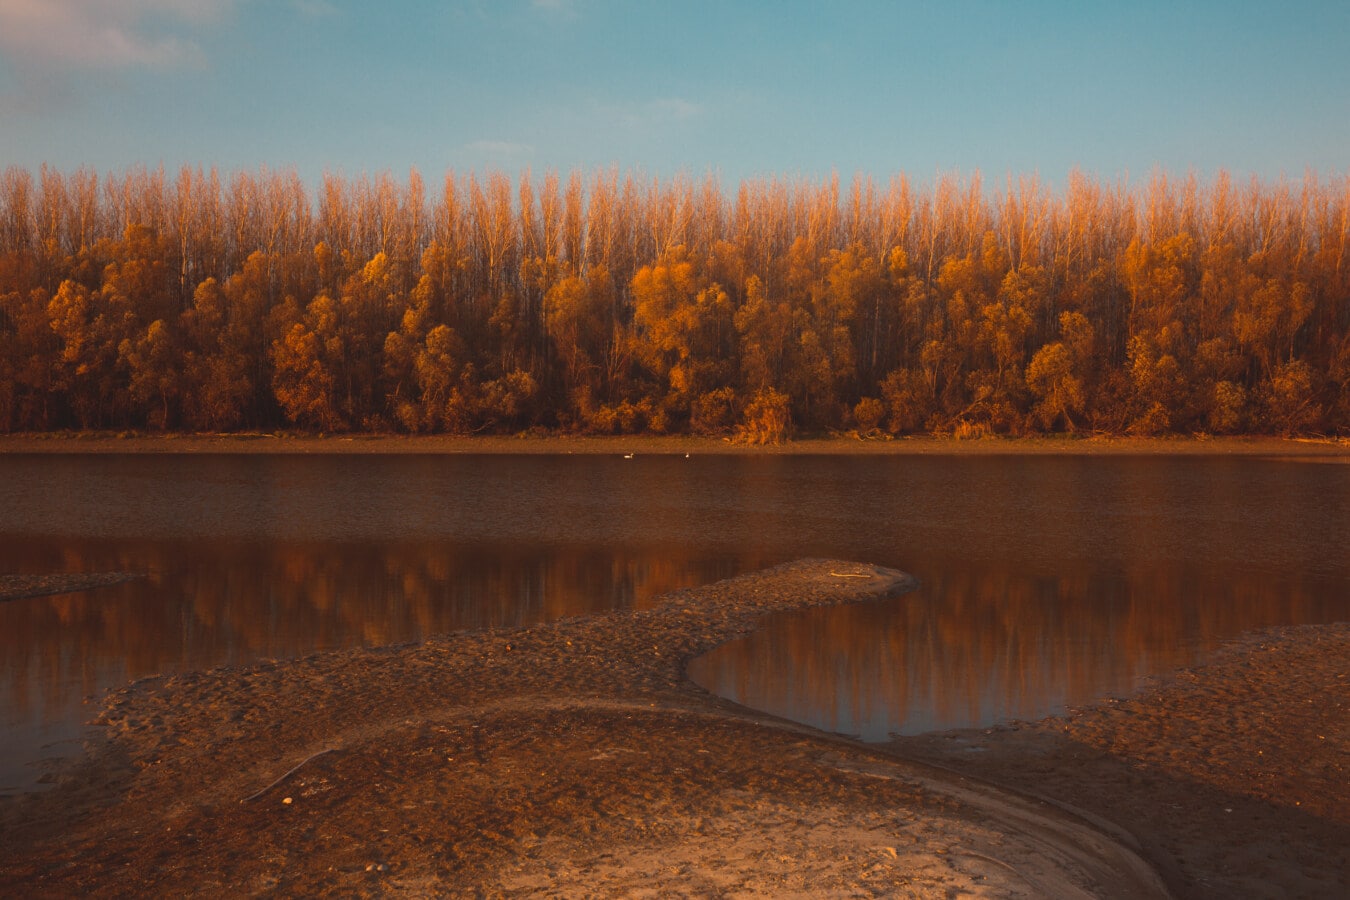 Flussufer, Herbst, bei Ebbe, Fluss, Flussbett, Landschaft, Wasser, Holz, Sonnenuntergang, Struktur